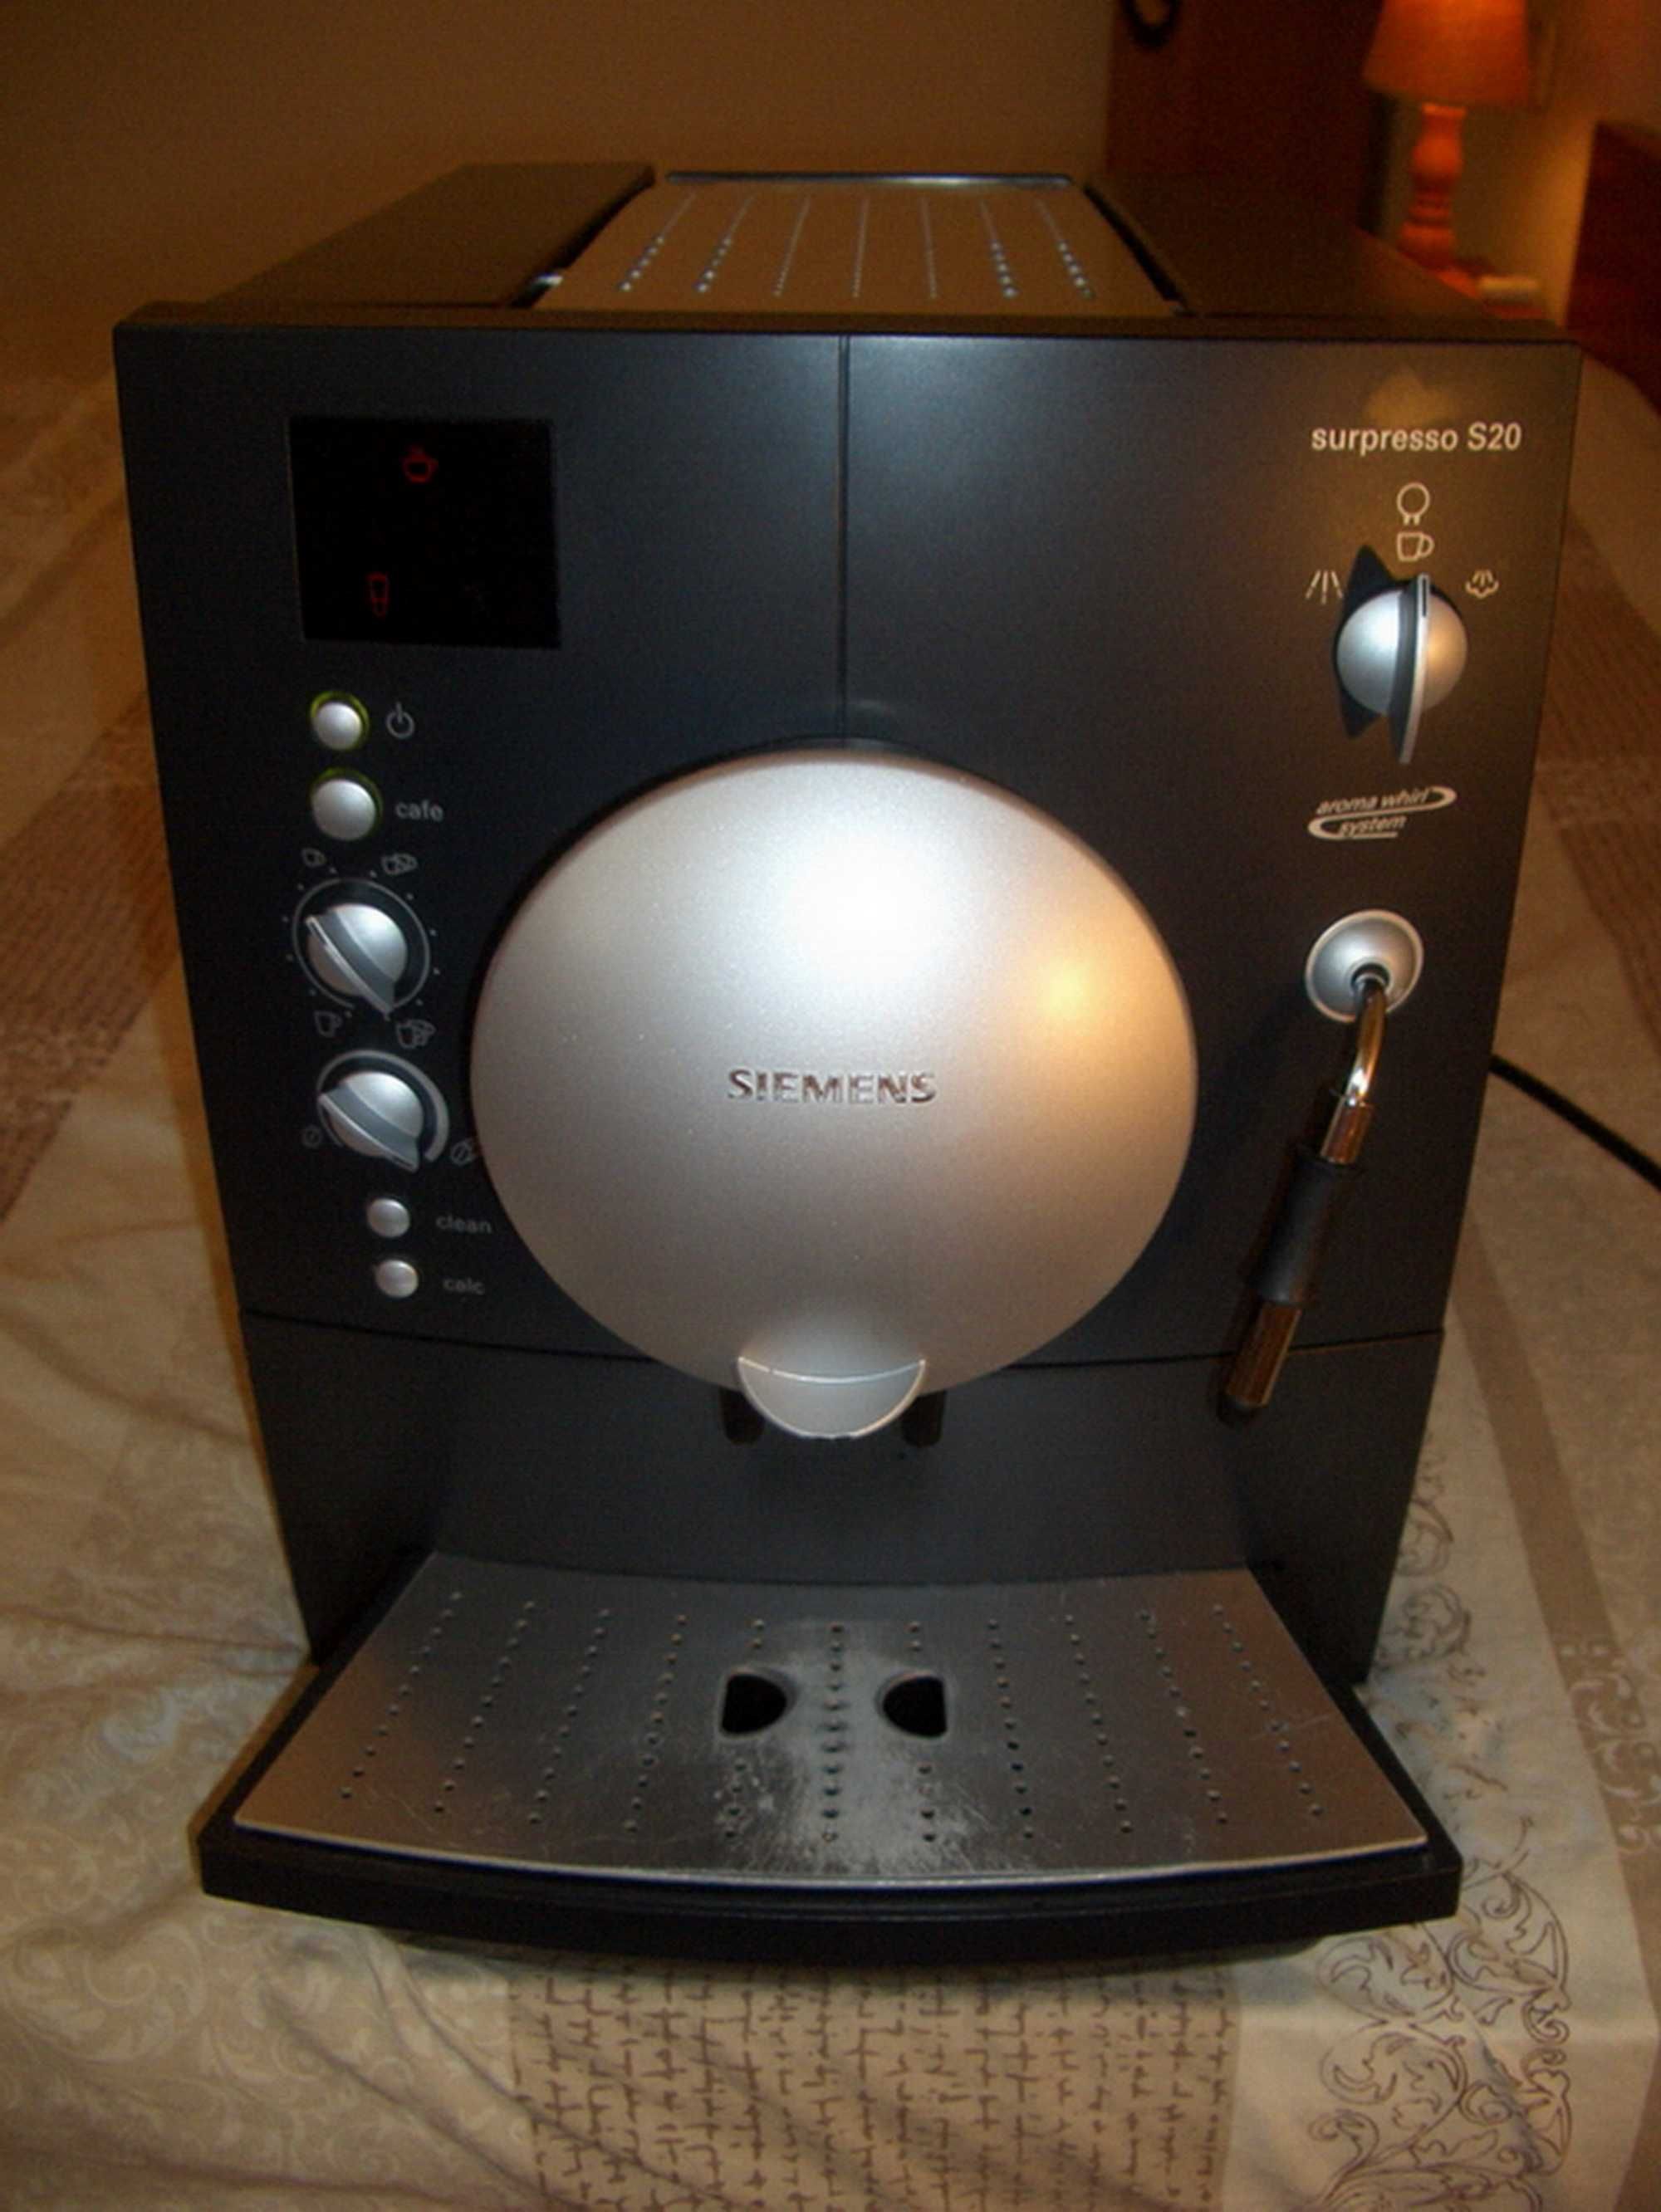 Кофемашина Siemens Surpresso S20 (автоматическая кофеварка) рабочая